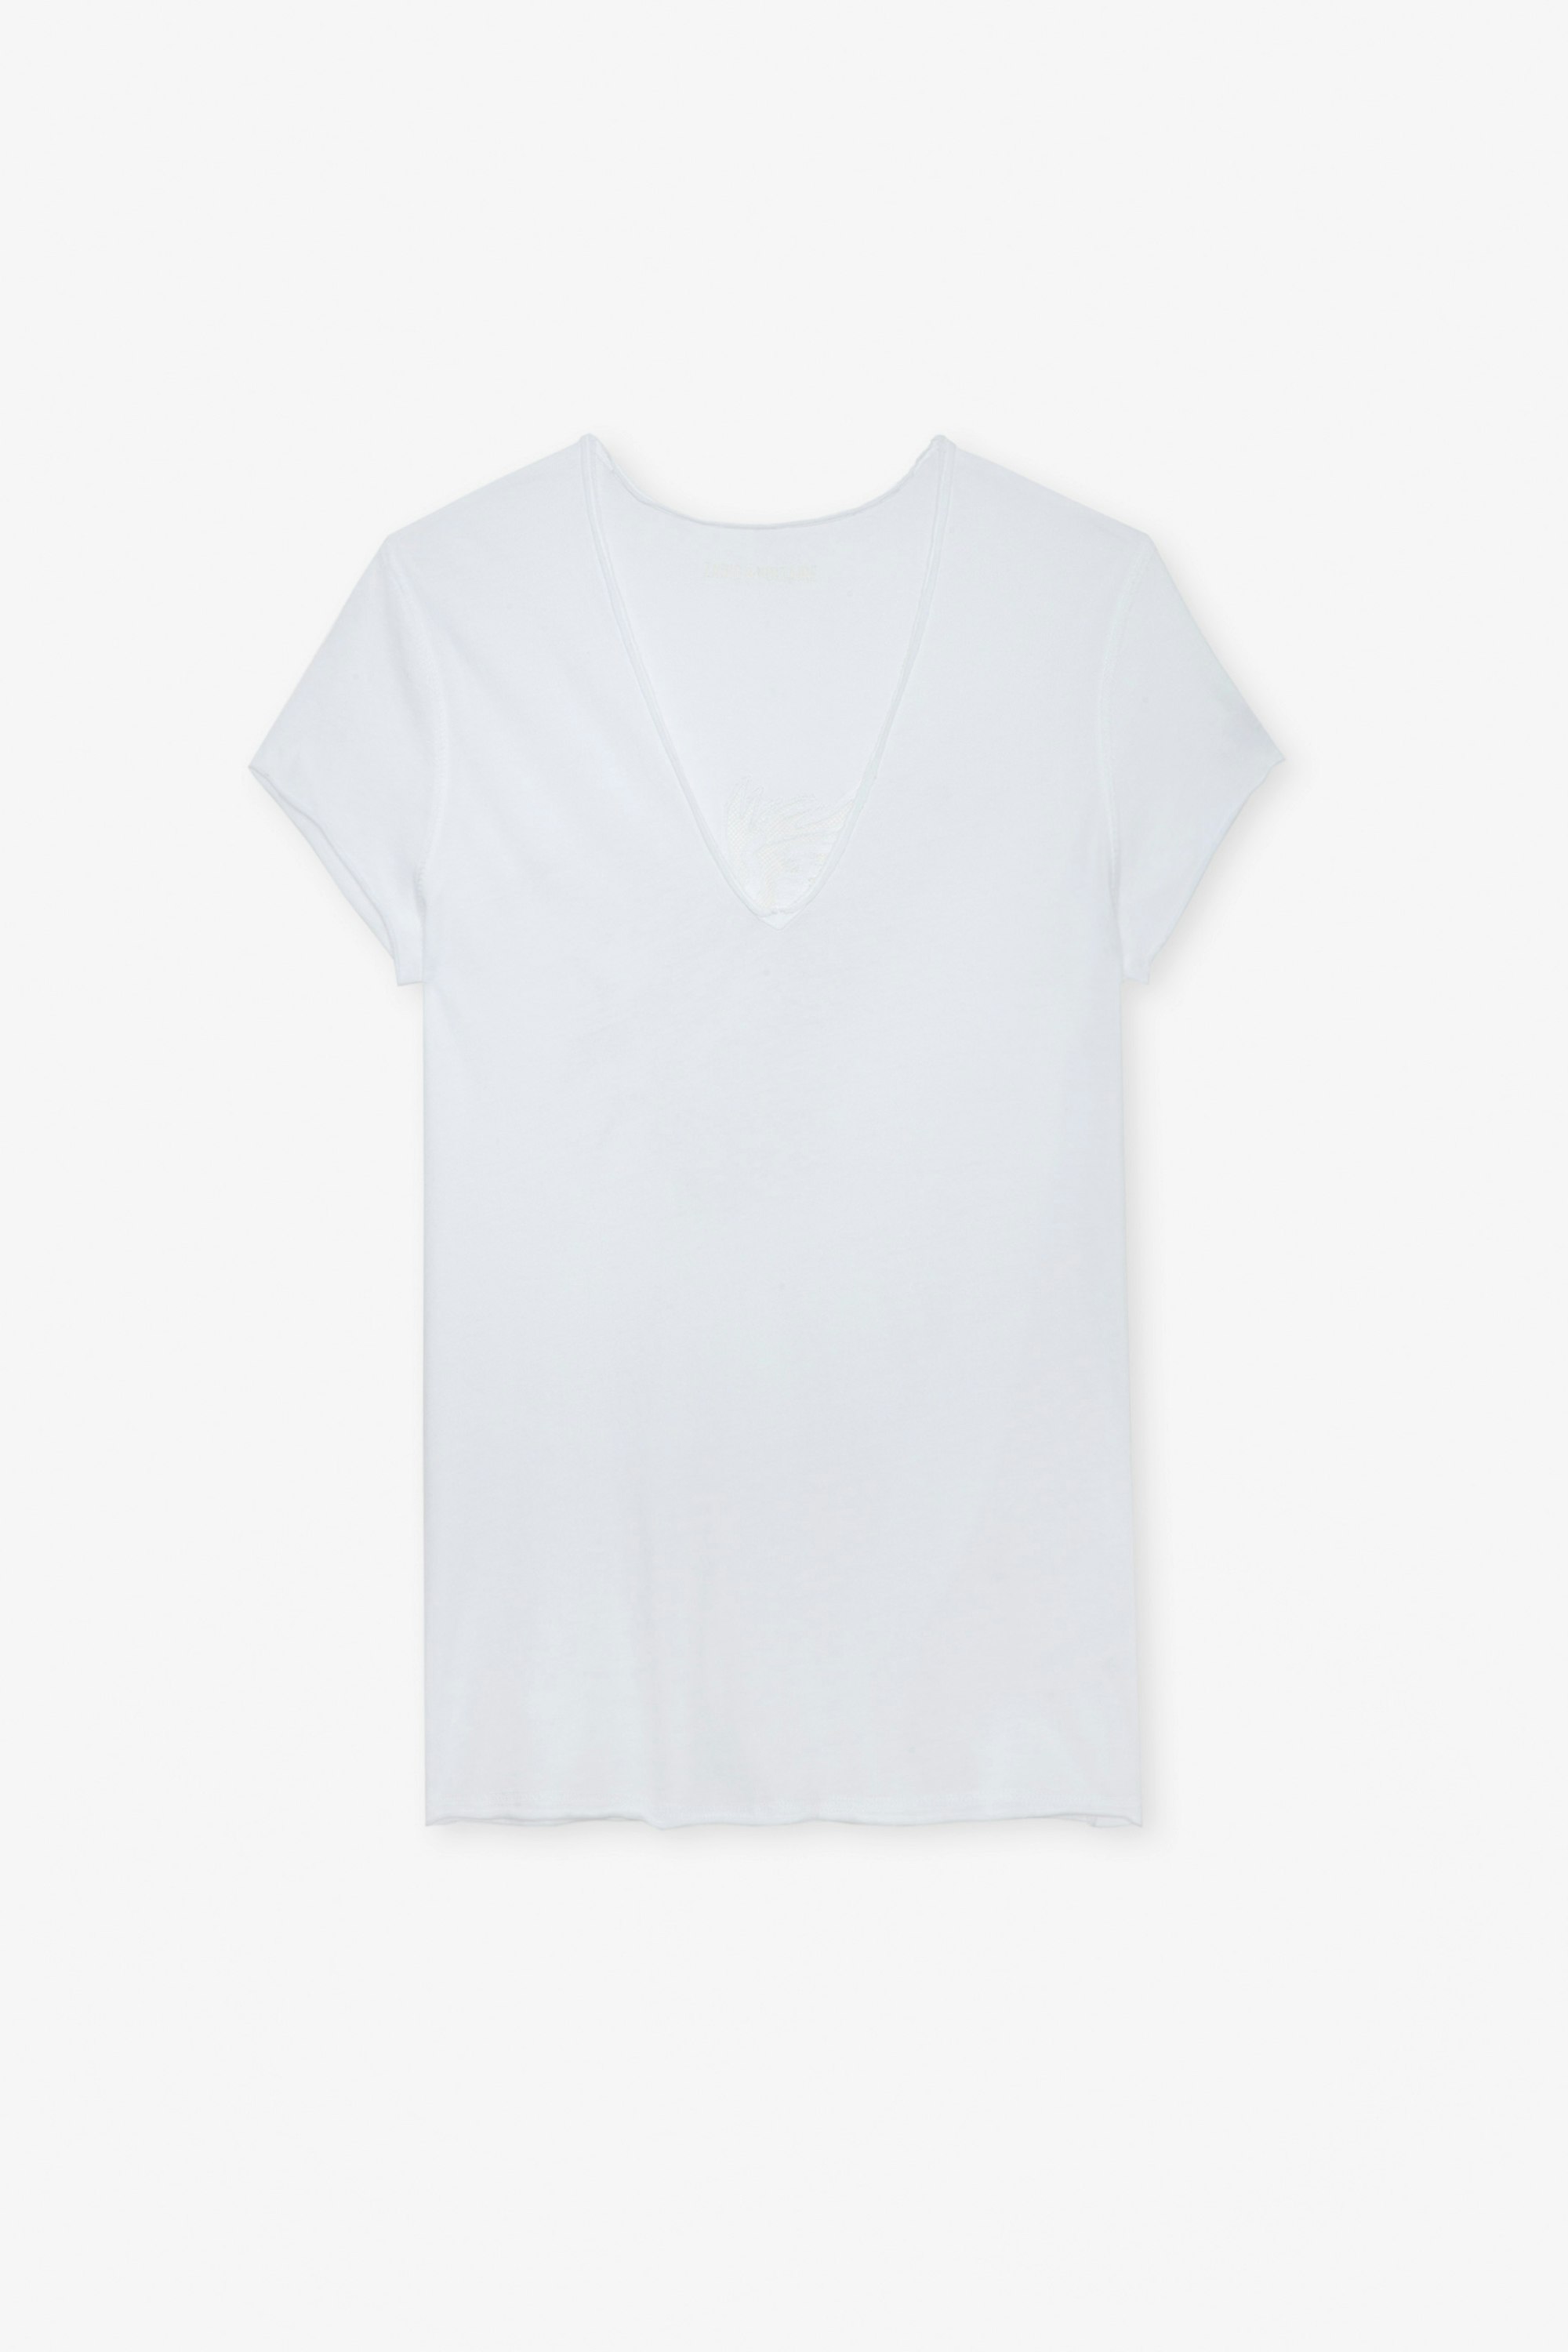 T-shirt Story Fishnet - T-shirt en coton blanc orné d'une broderie aigle au dos.